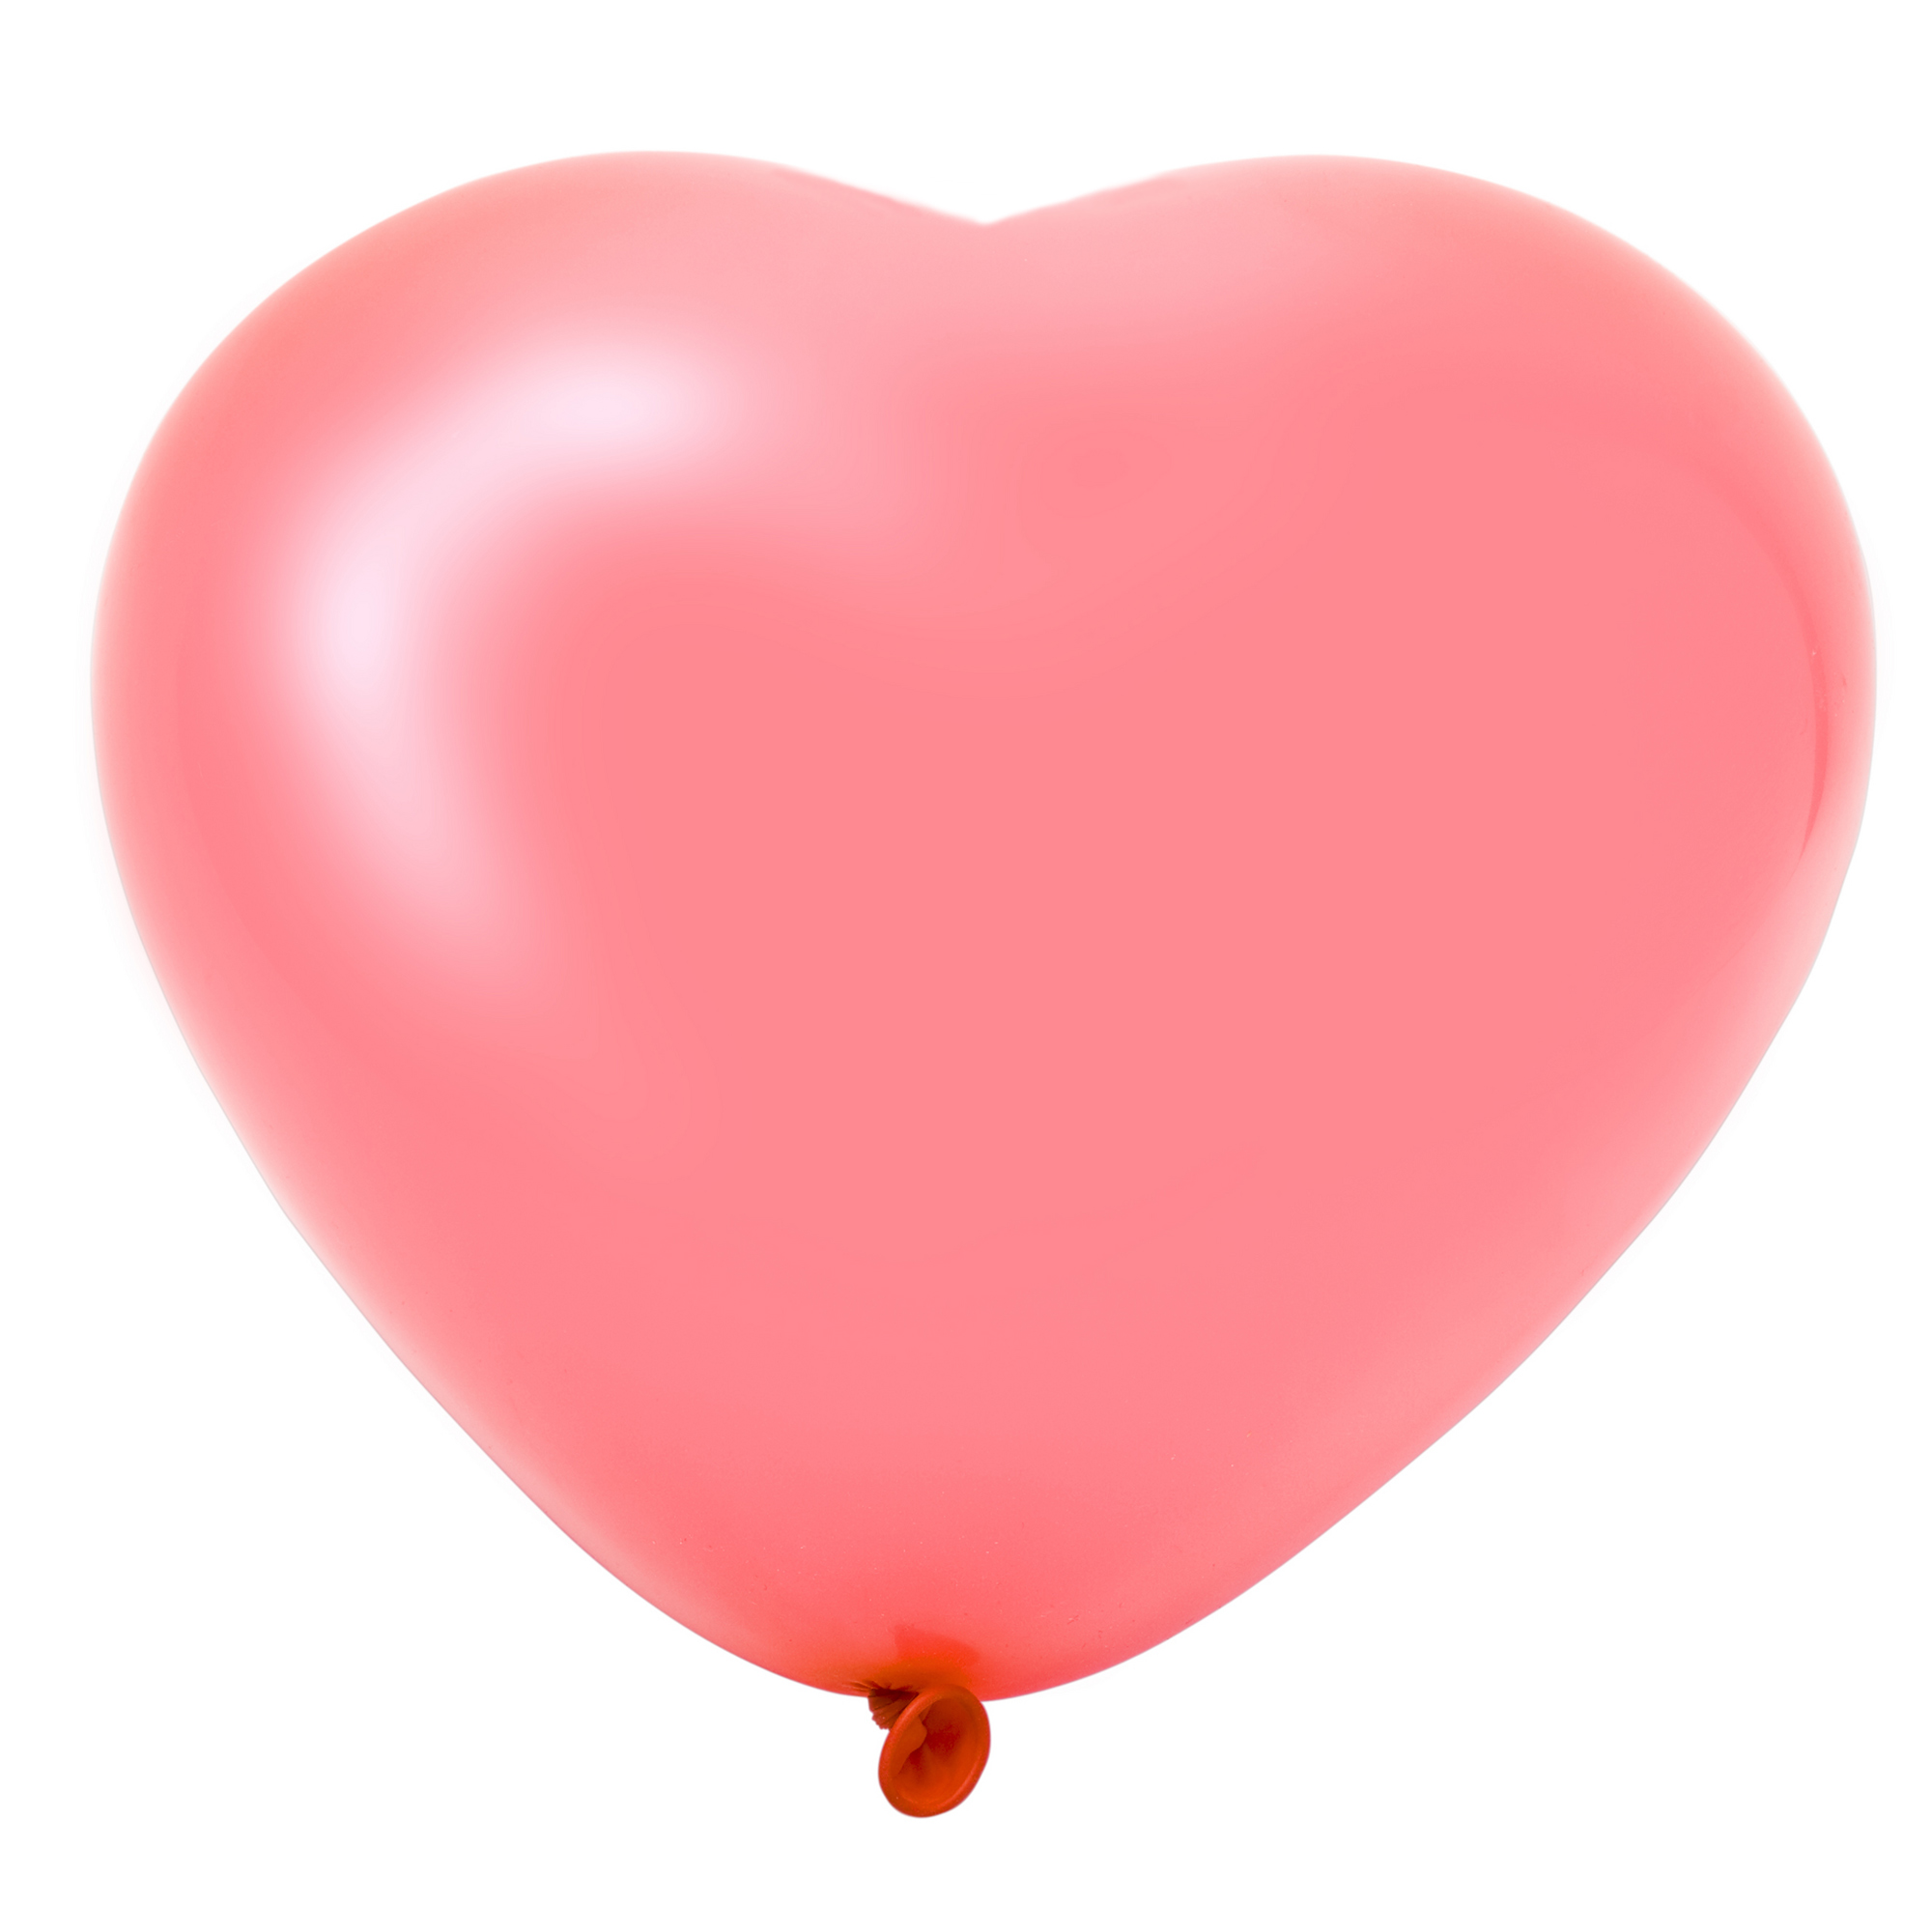 heart balloon clipart - photo #32